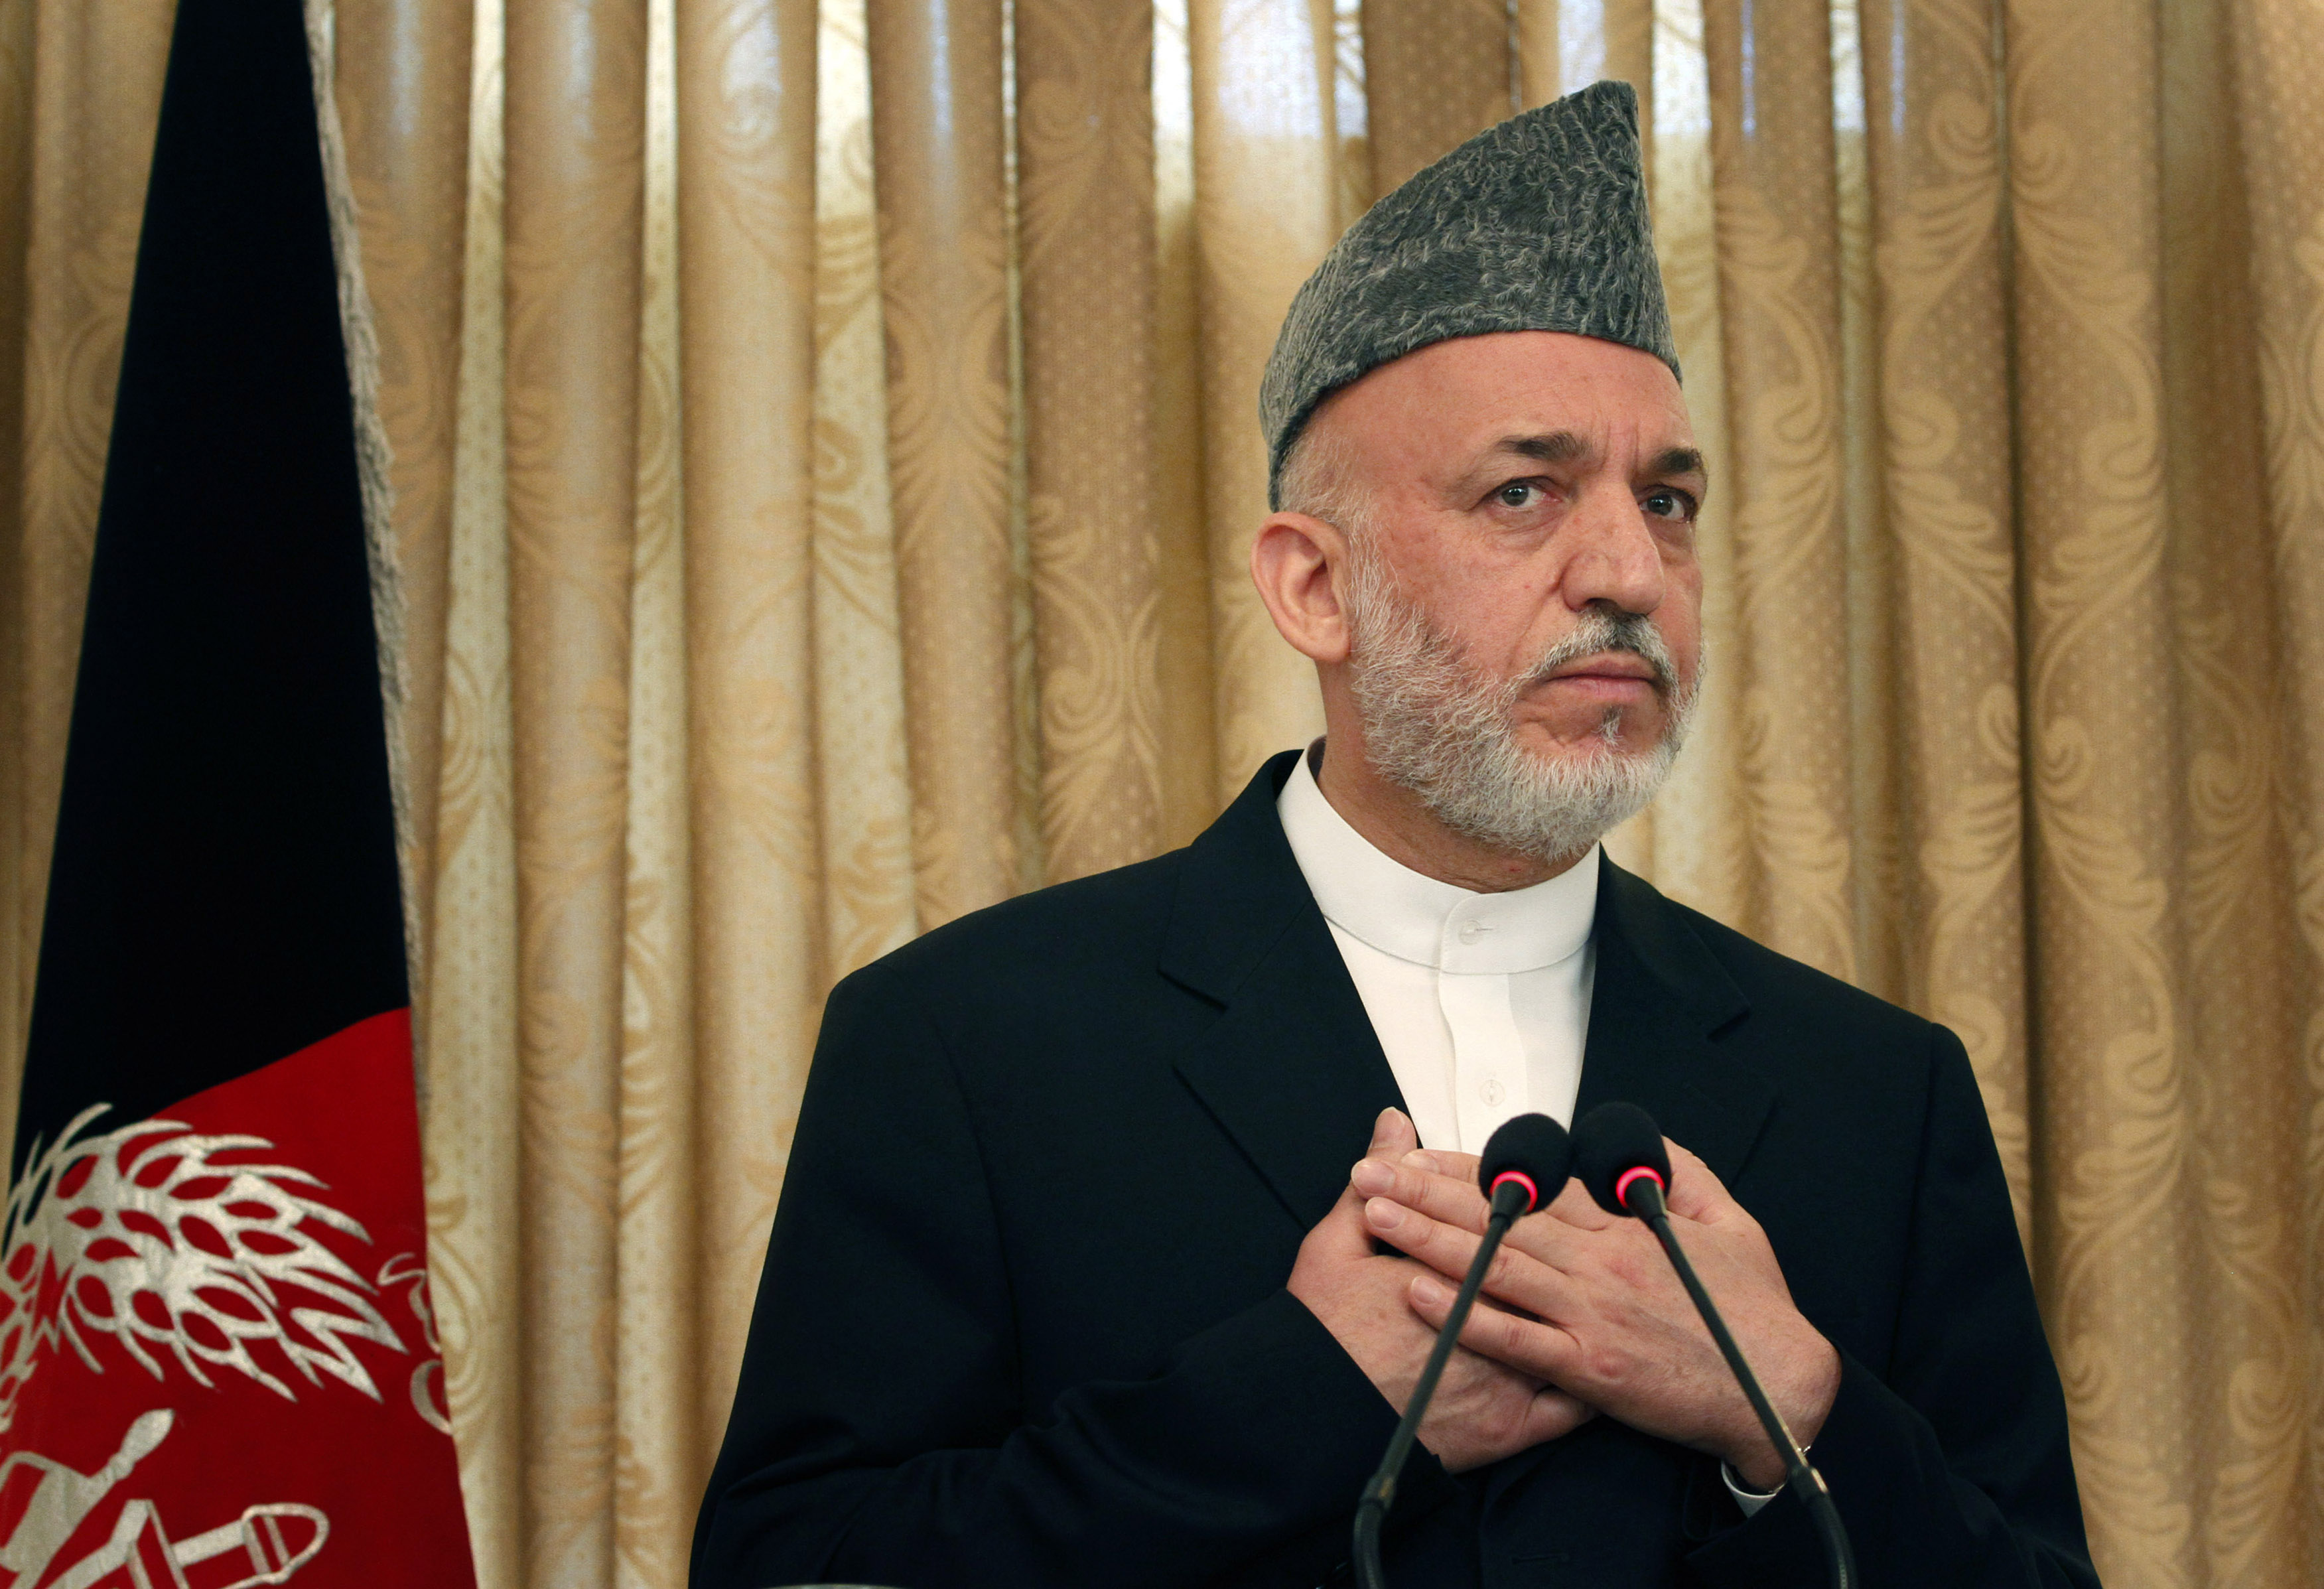 Afghanistans president, Hamid Karzai, anklagas av USA - i de av Wikileaks läckta dokumenten för att vara "svag och paranoid". 